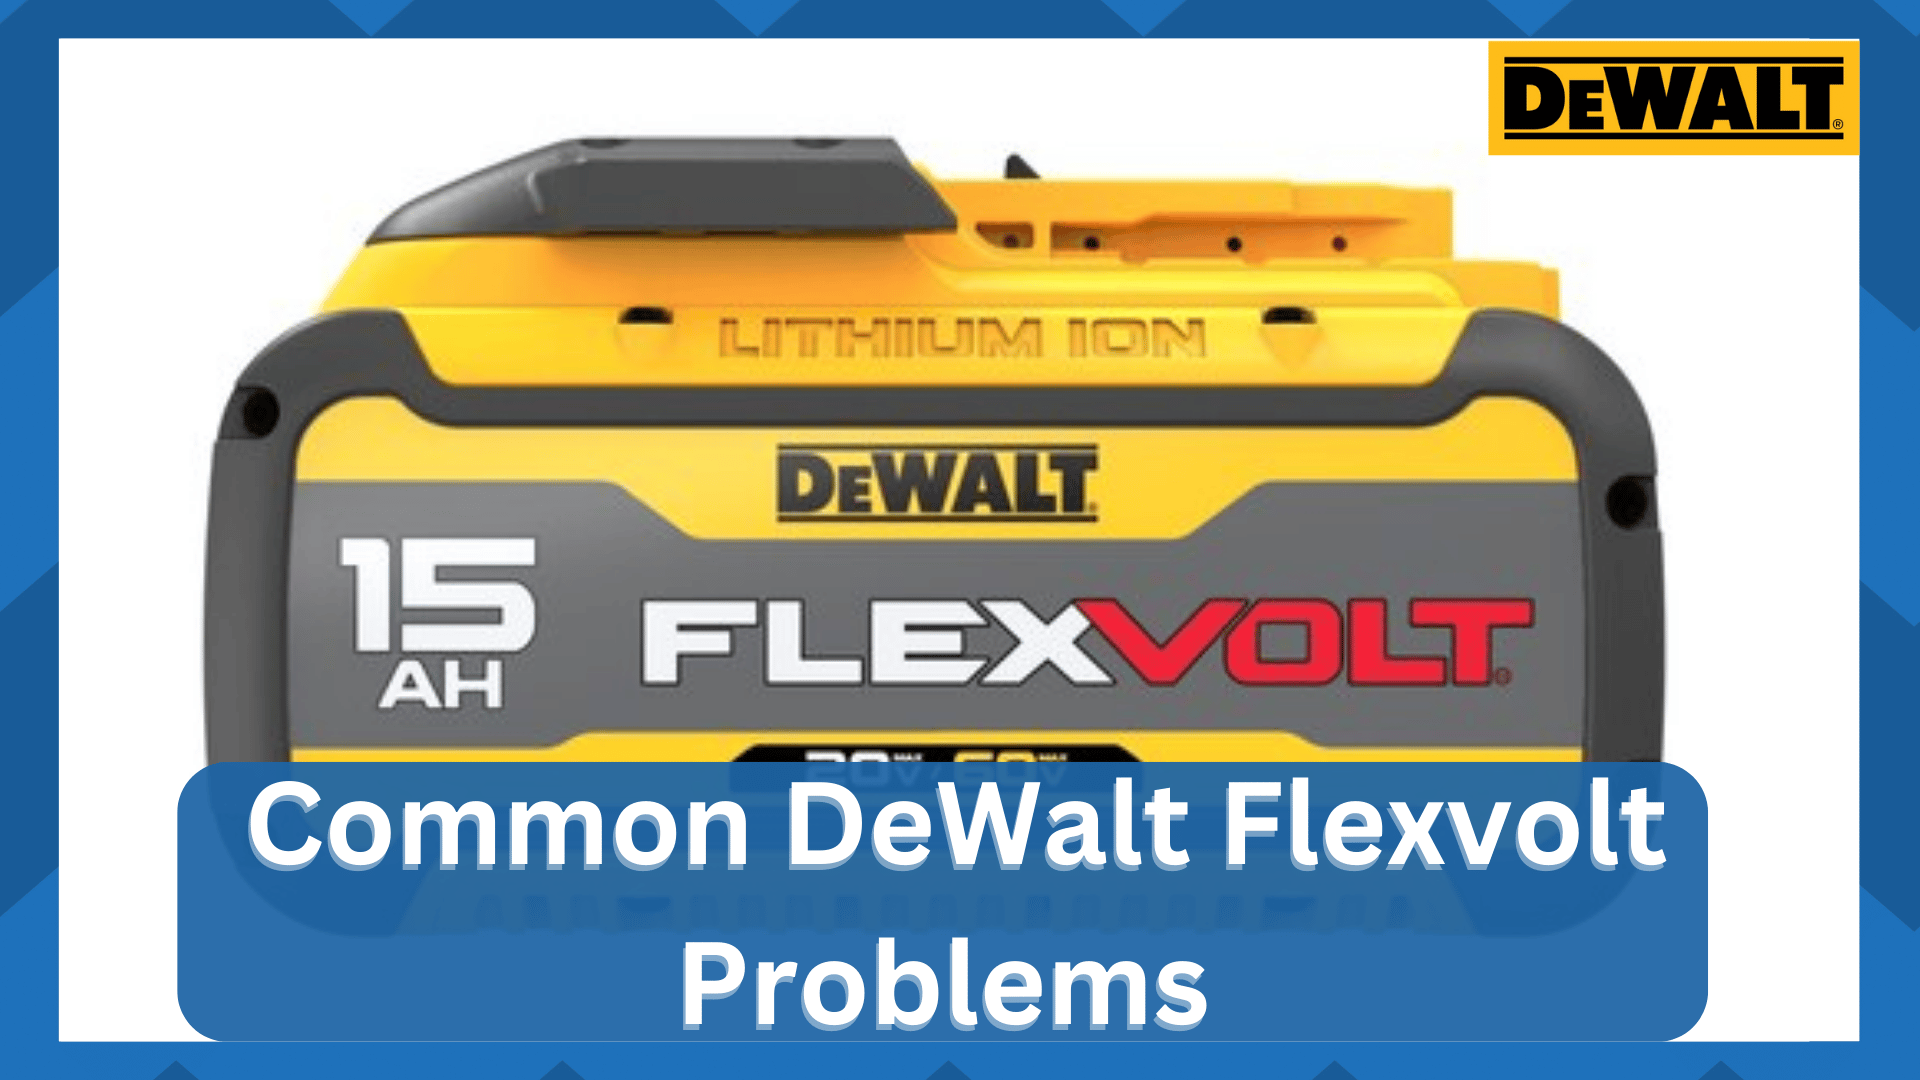 dewalt flexvolt problems